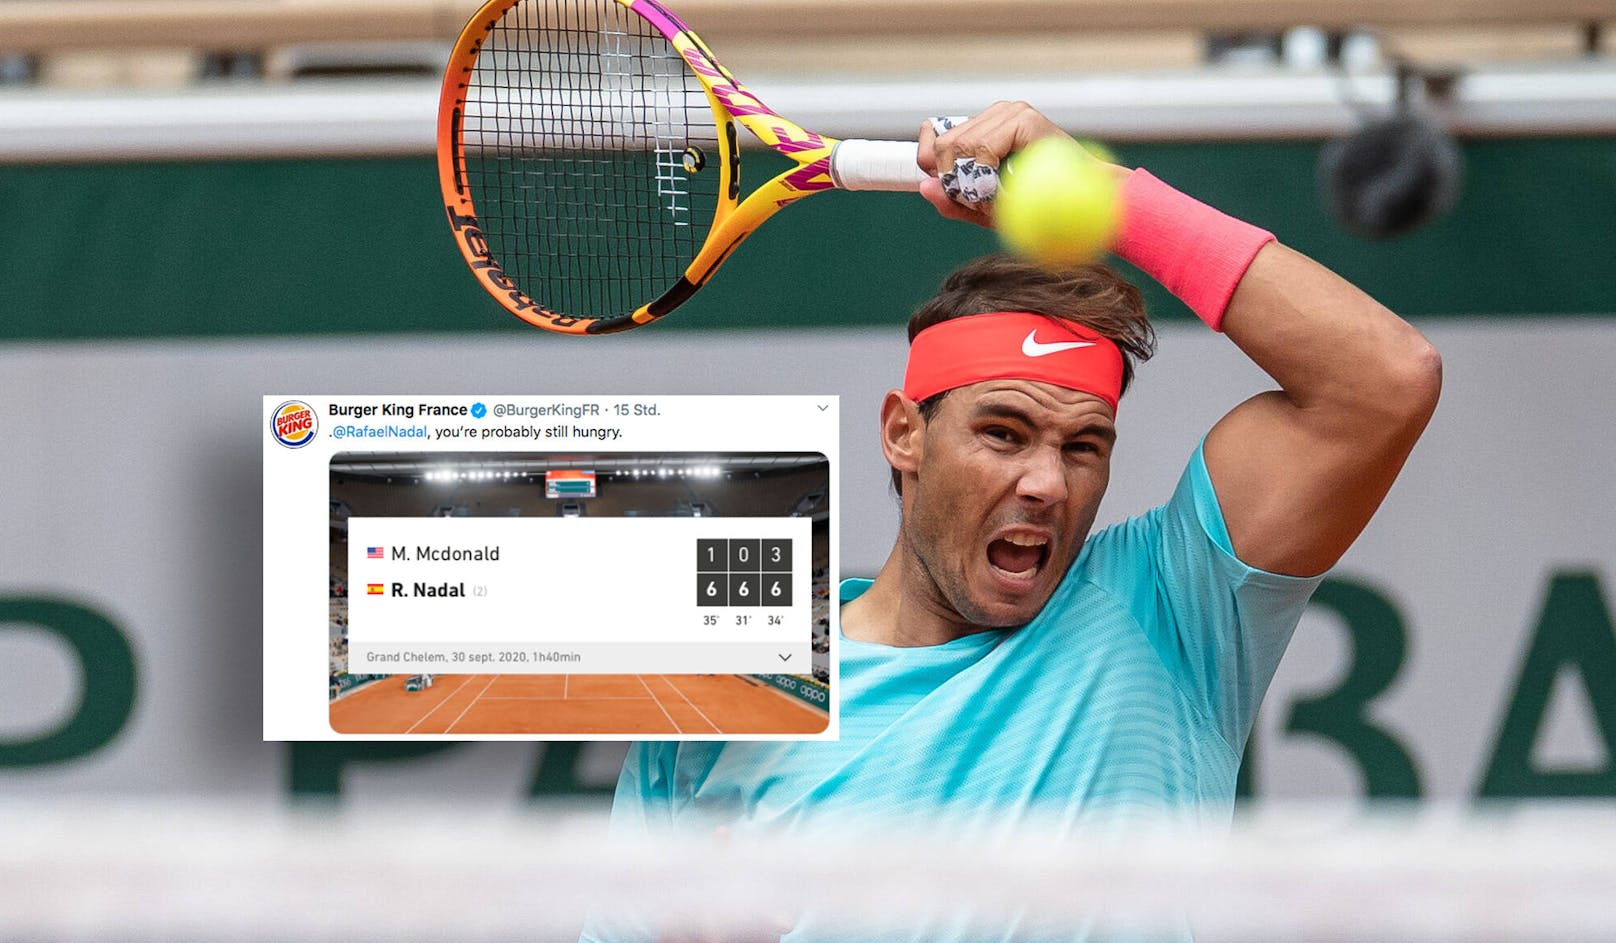 Rafael Nadal lieferte Burger King eine Steilvorlage.